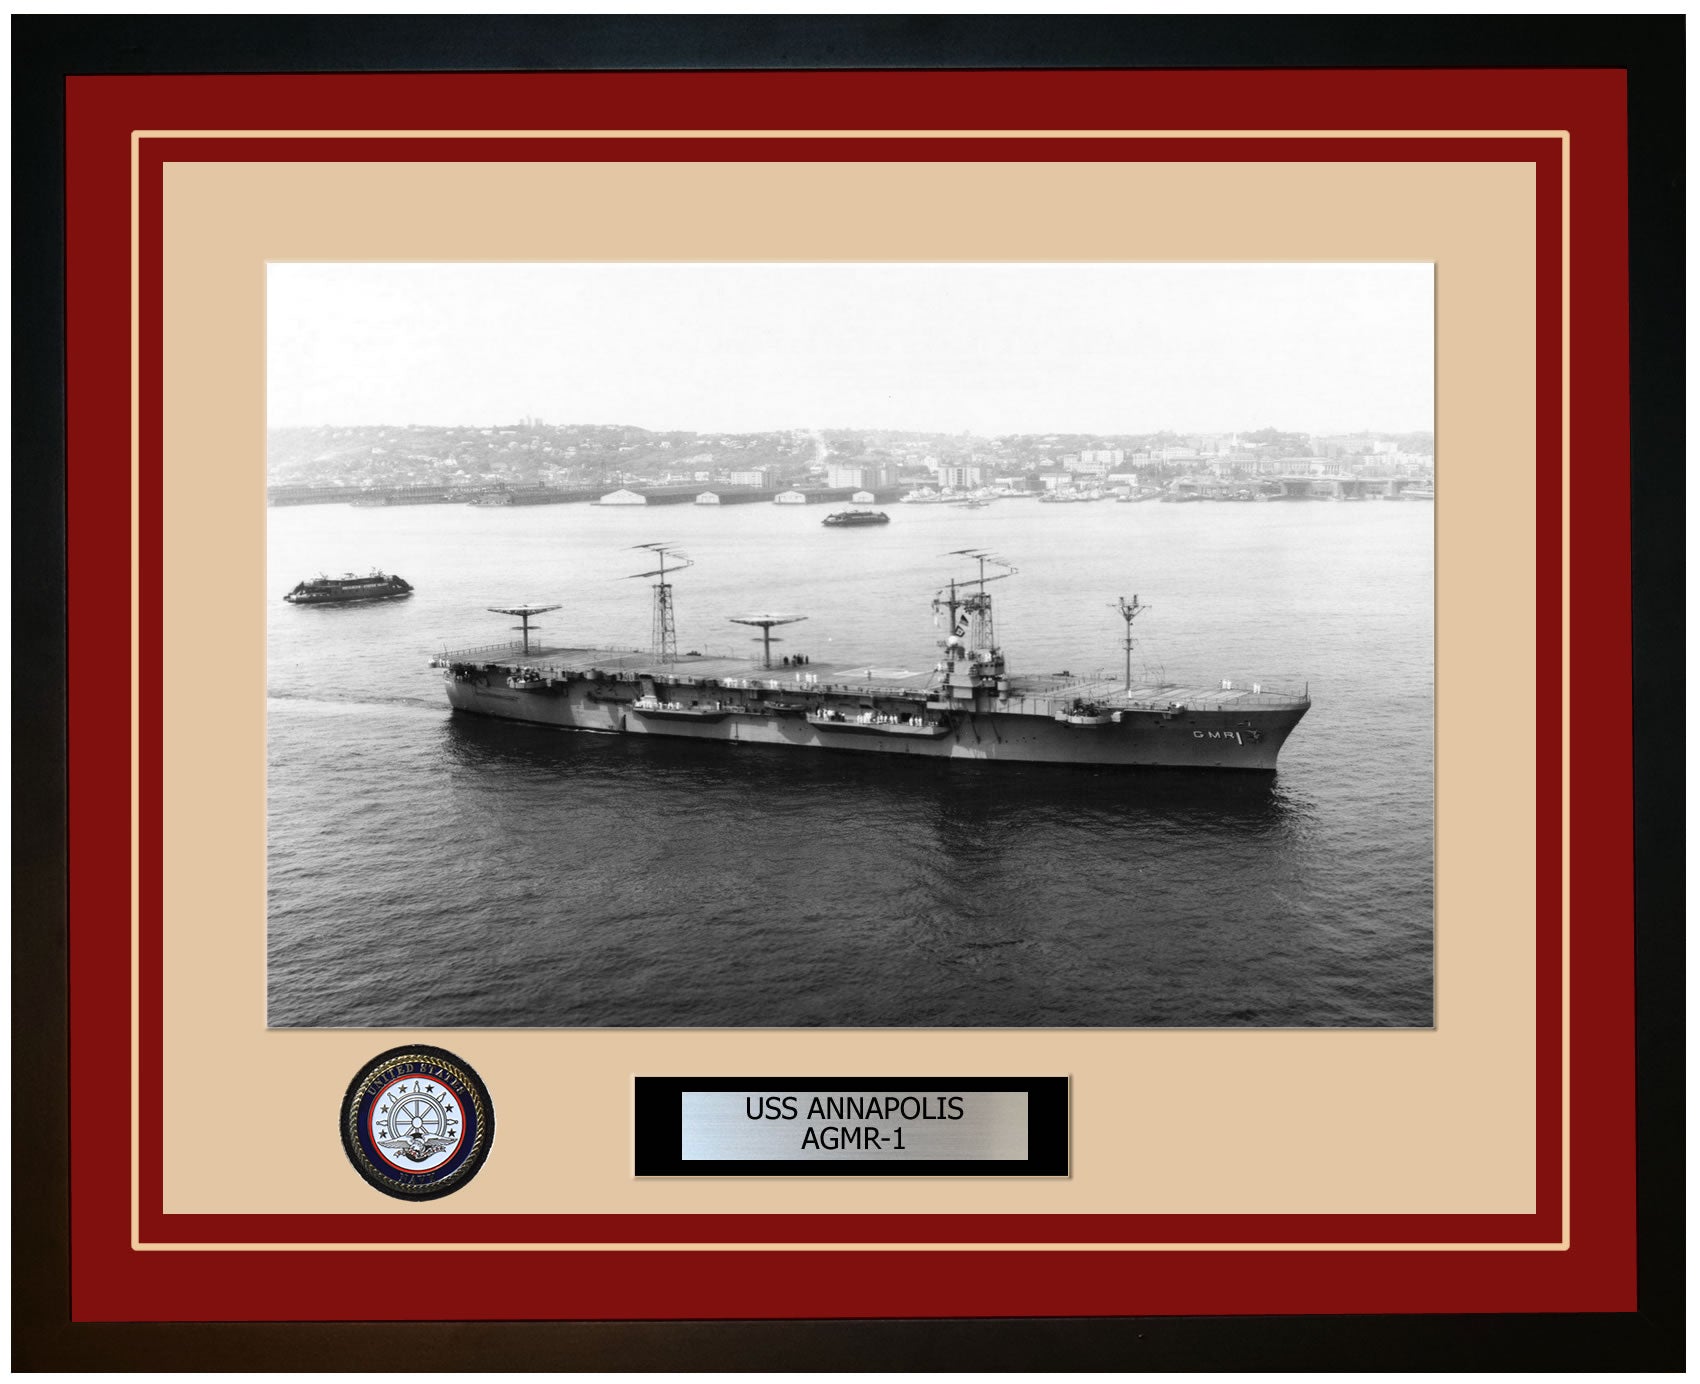 USS ANNAPOLIS AGMR-1 Framed Navy Ship Photo Burgundy